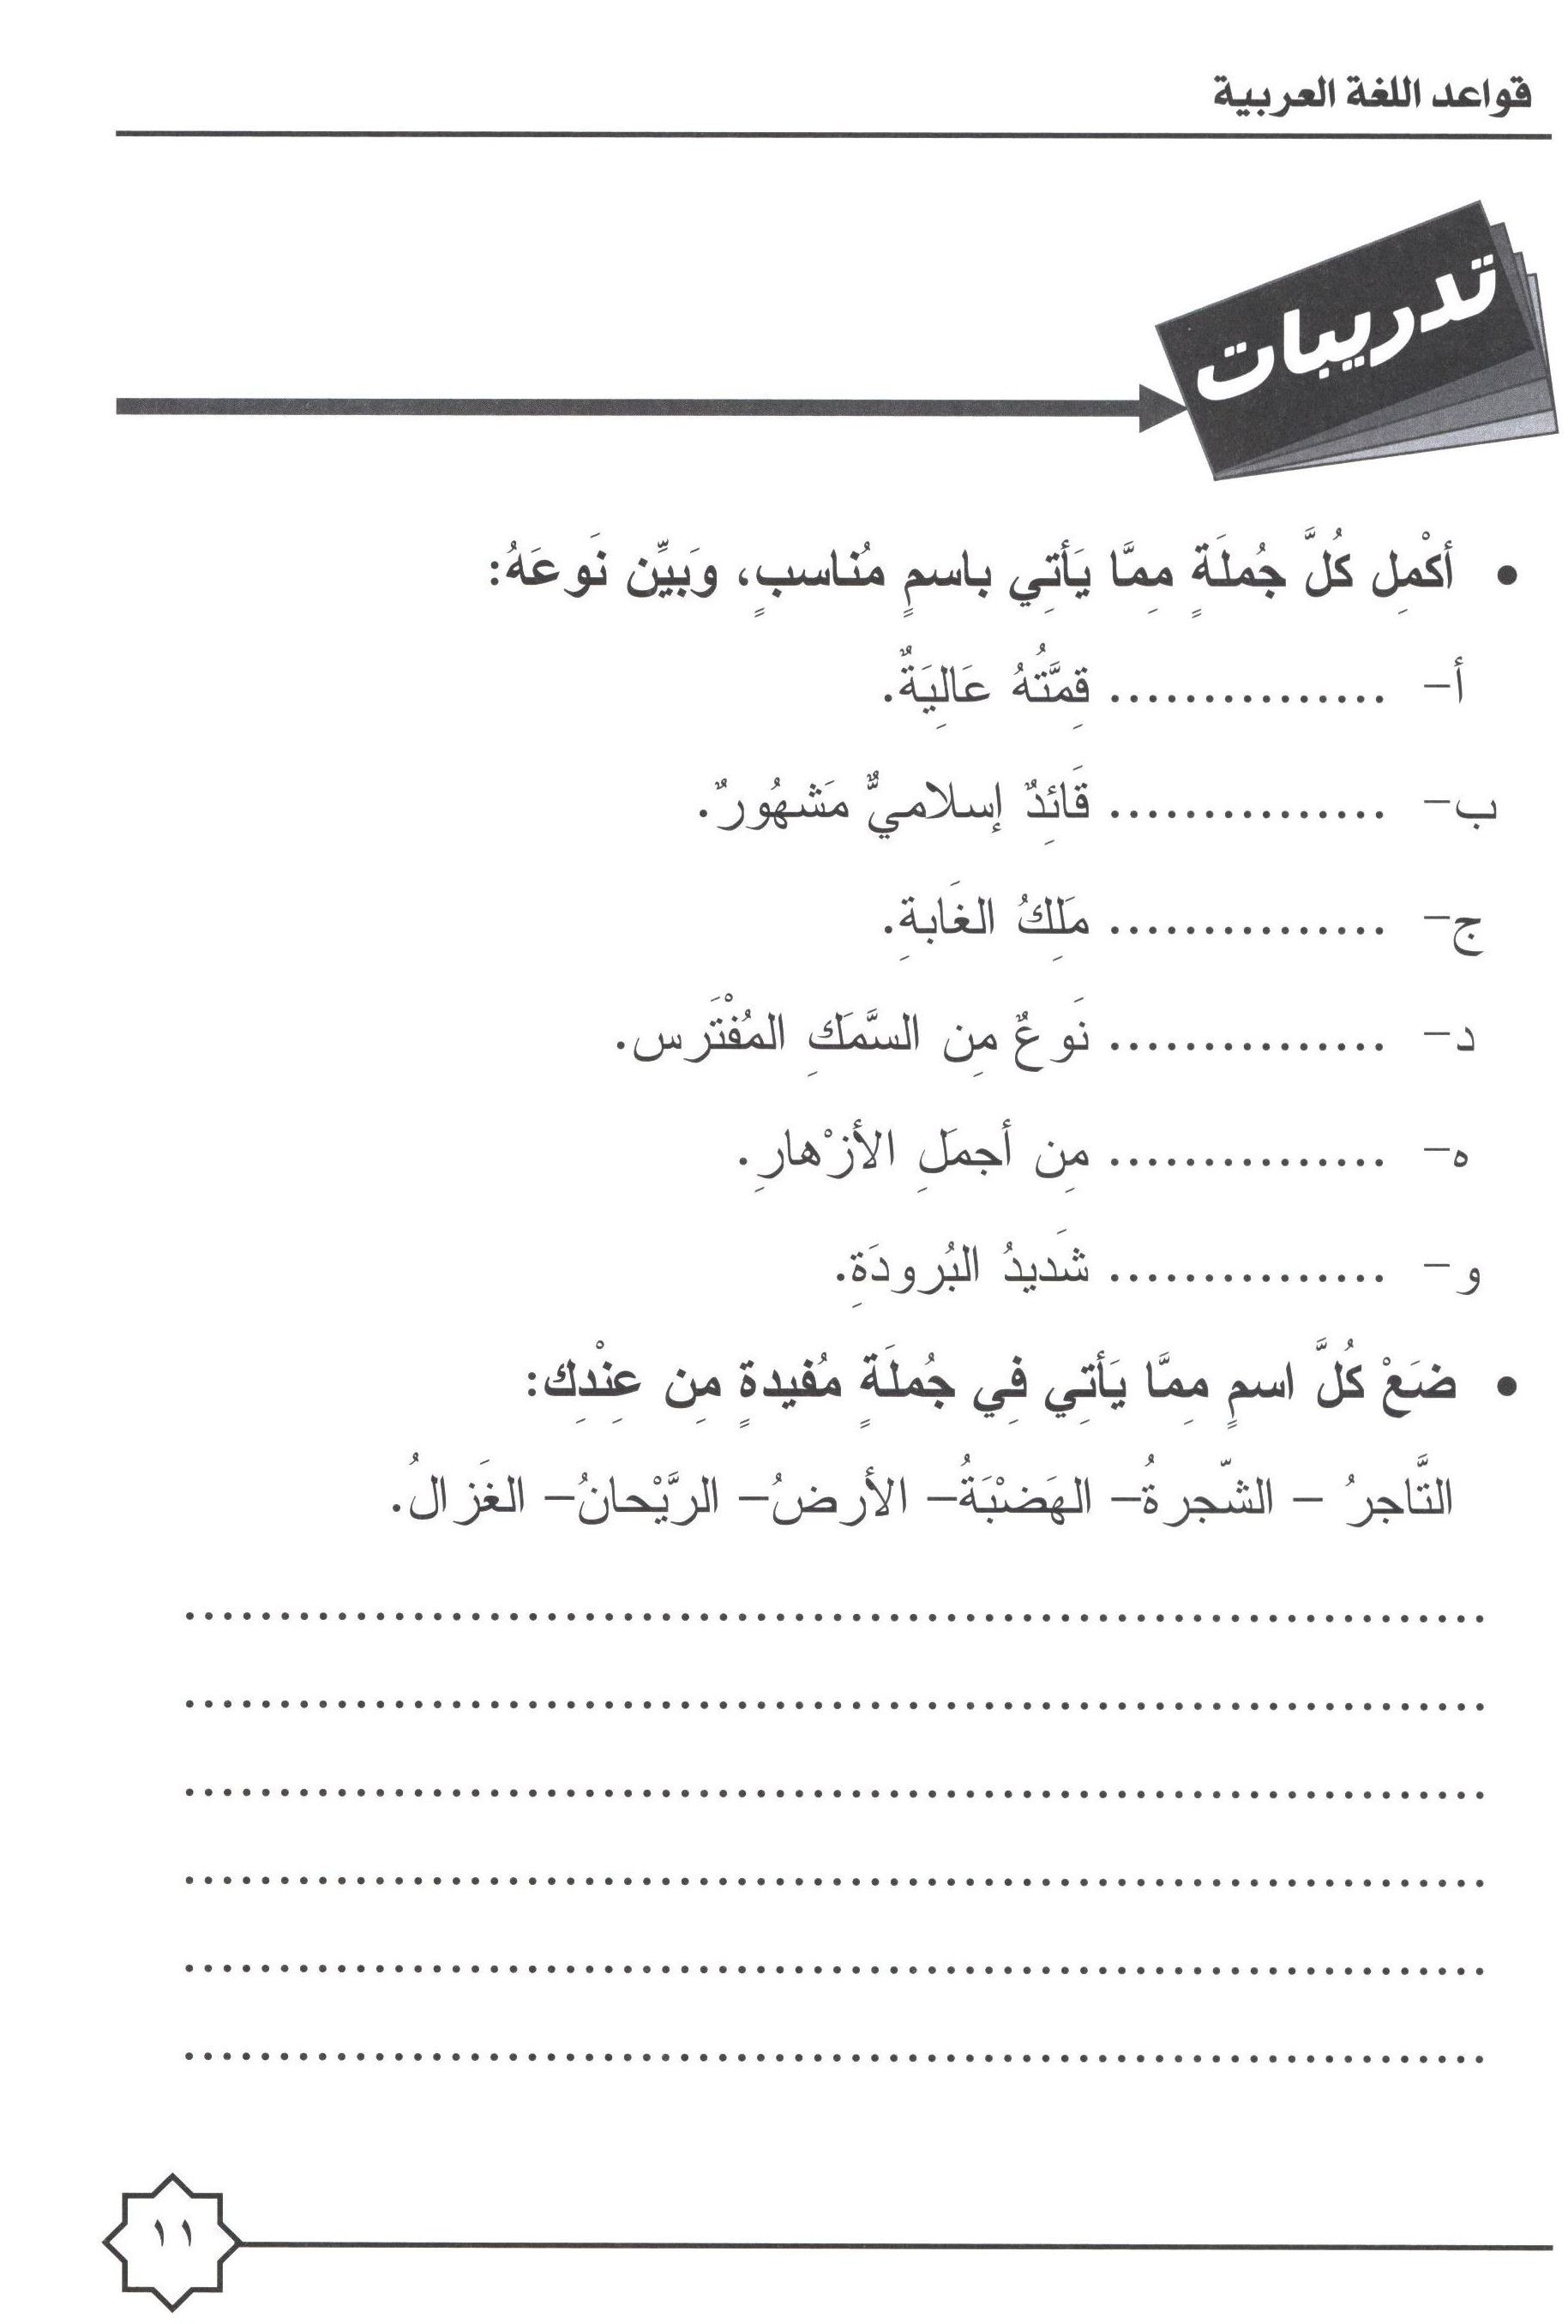 Al-Rowad Arabic Grammar Level 1 Part 1 تدريبات في قواعد اللّغة العربيّة